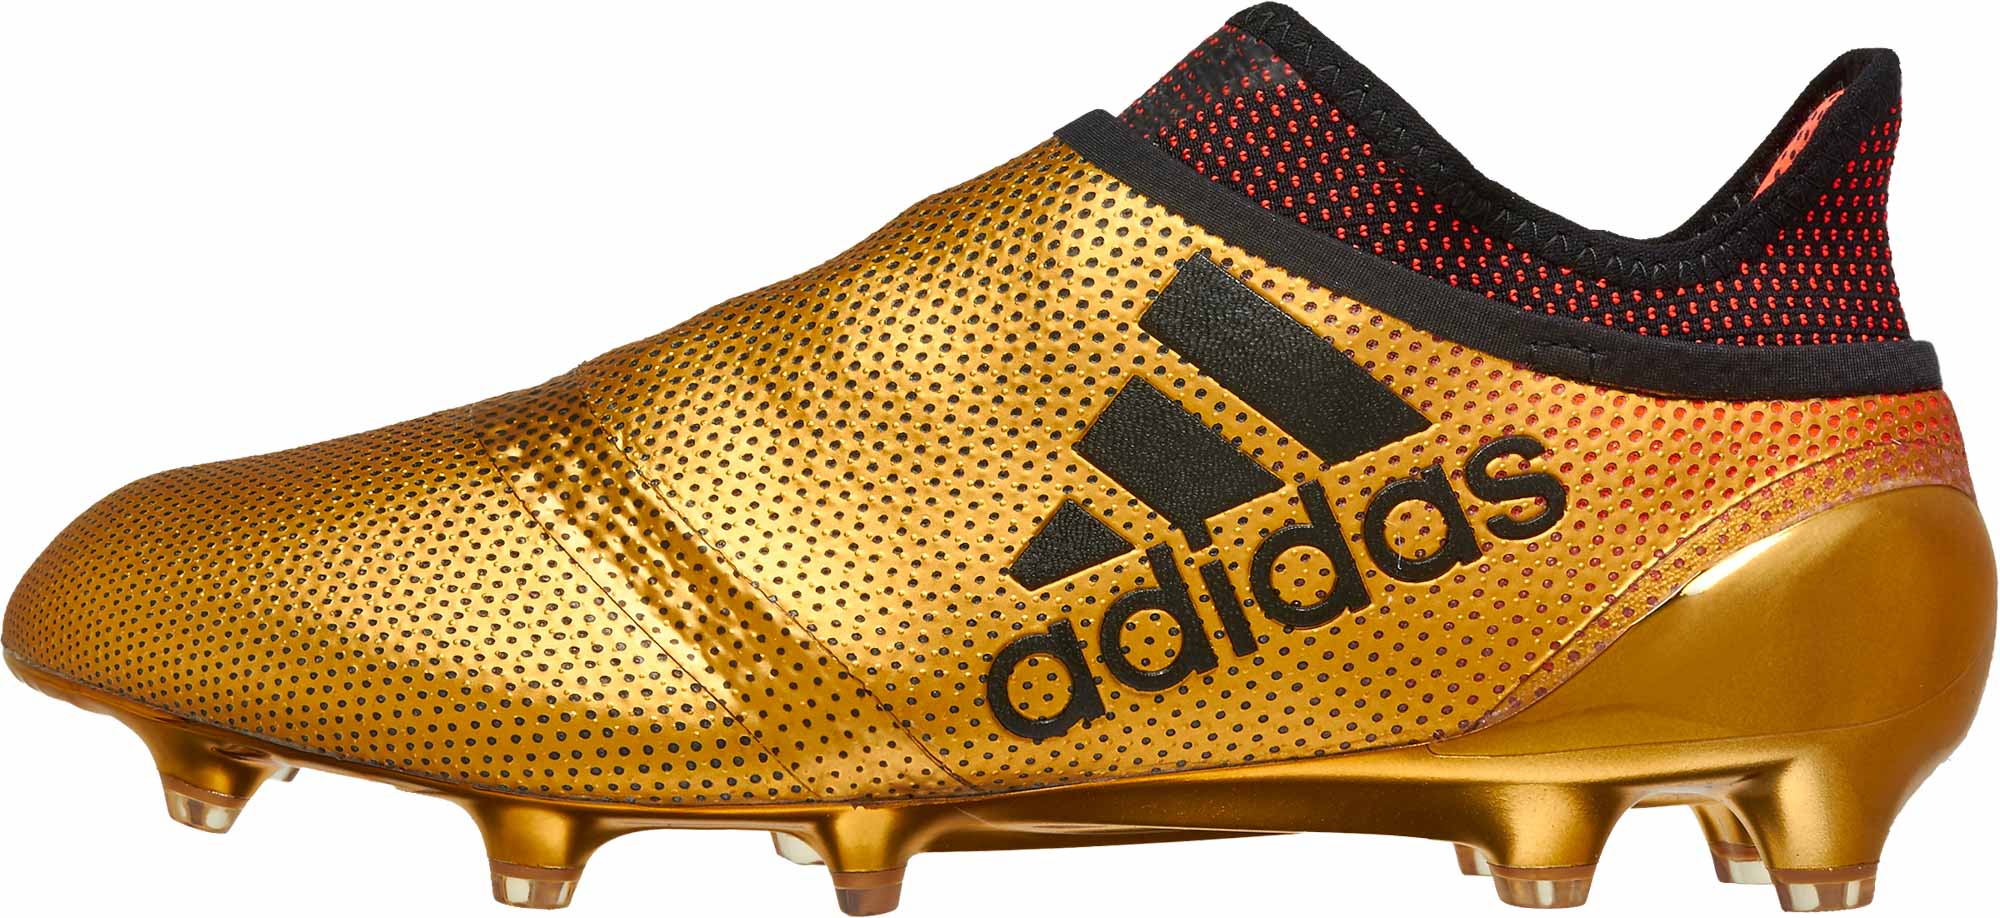 X 17+ Purechaos FG Tactile Gold Metallic & Solar Red Soccer Master